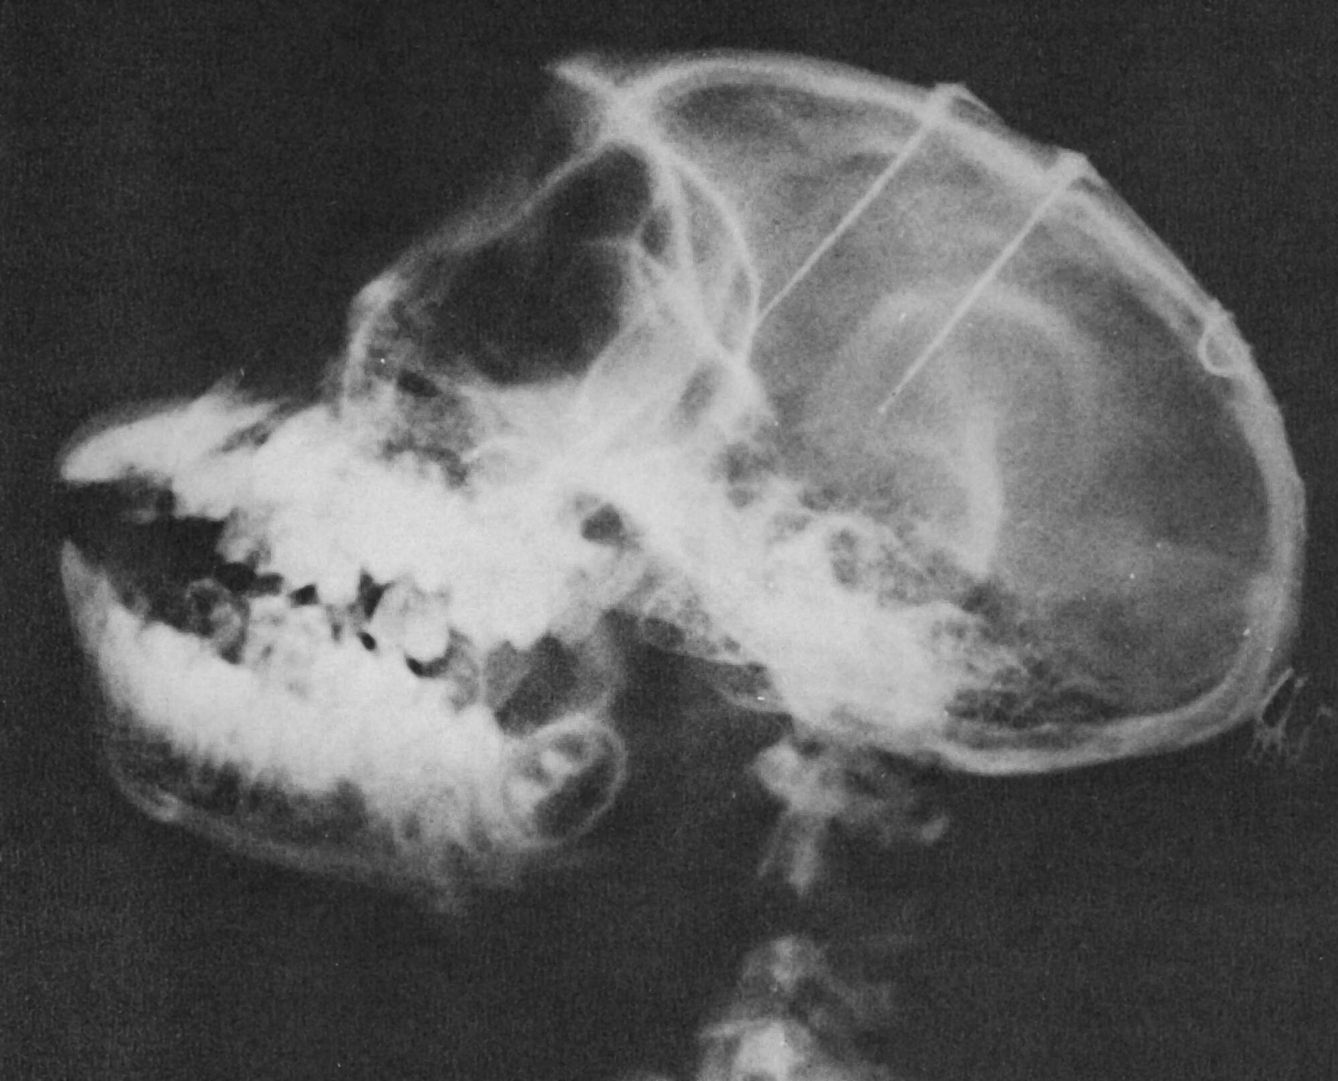 Radiografía de la cabeza de un mono que muestra dos conjuntos de electrodos implantados en los lóbulos frontales y en el tálamo del libro 'Physical Control of the Mind'